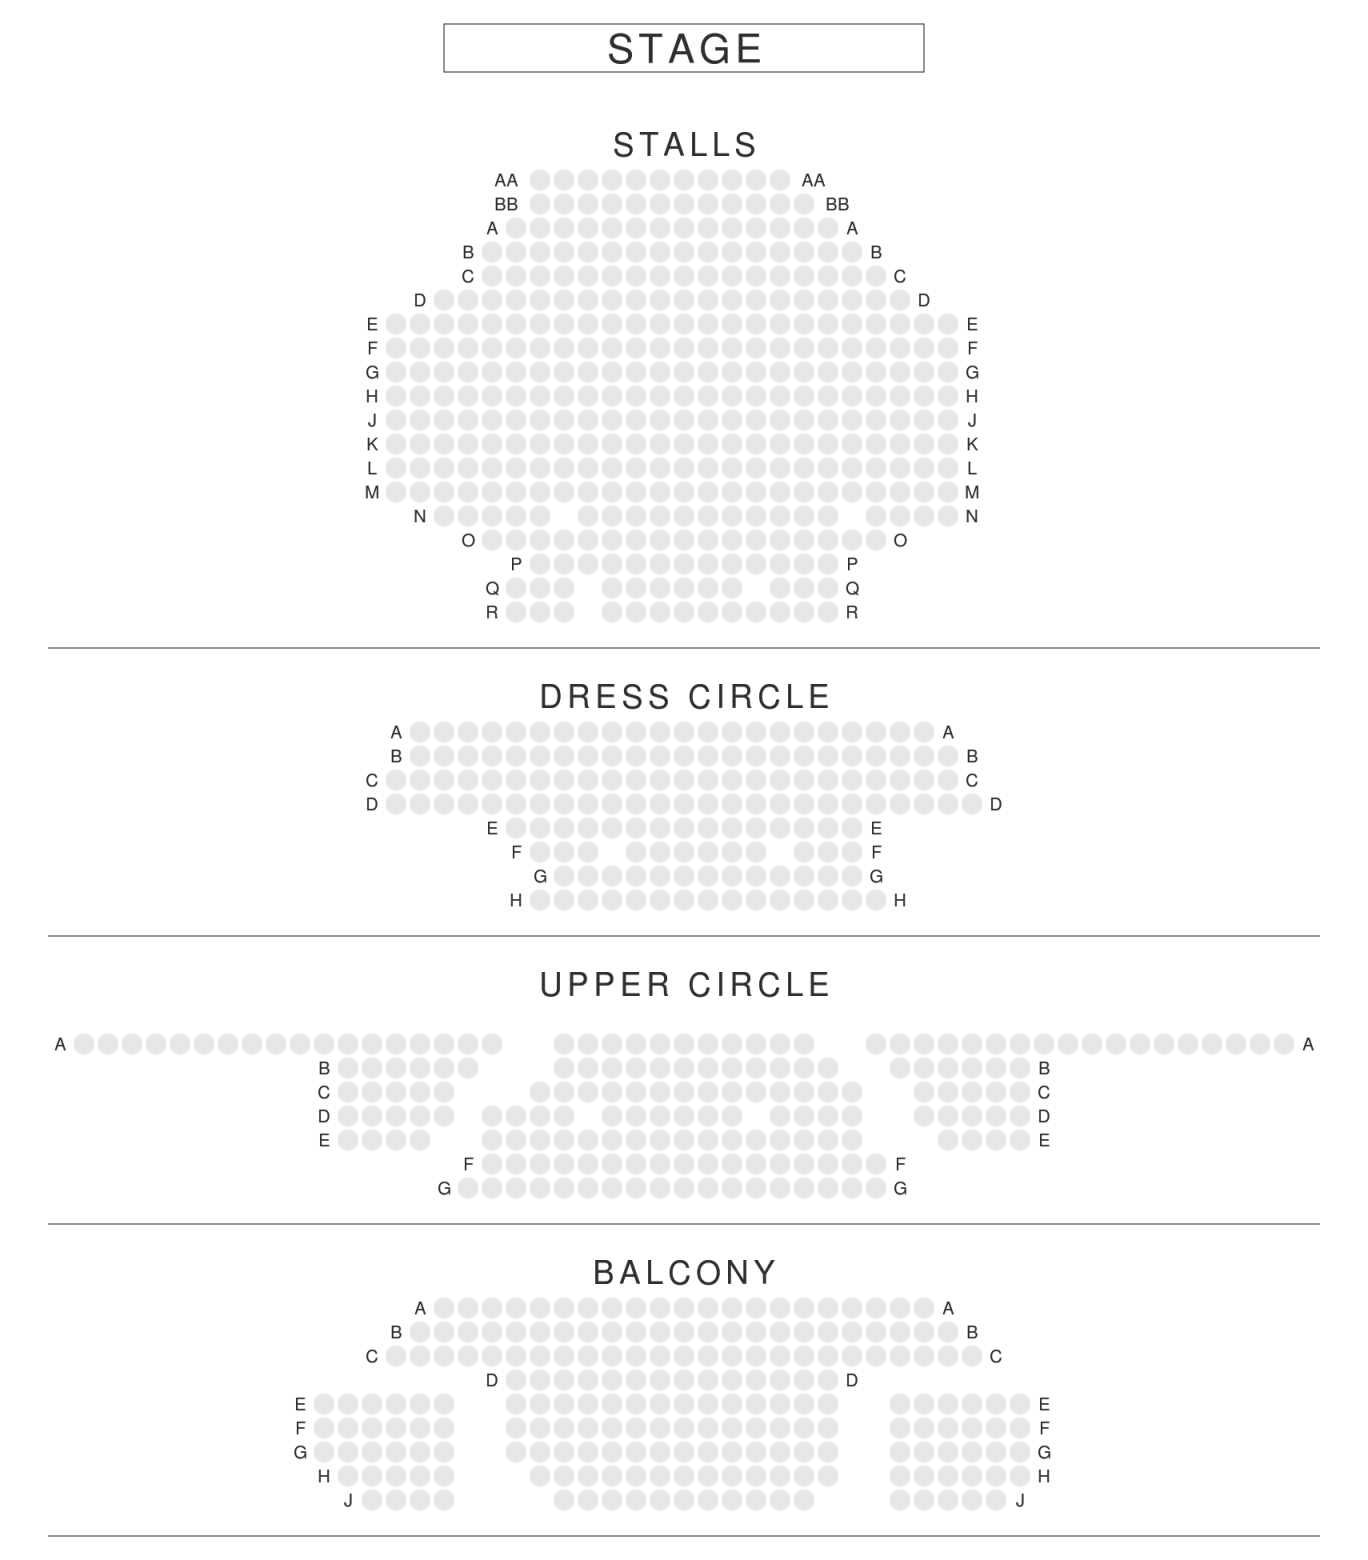 Lyric Opera House Seating Chart Baltimore.